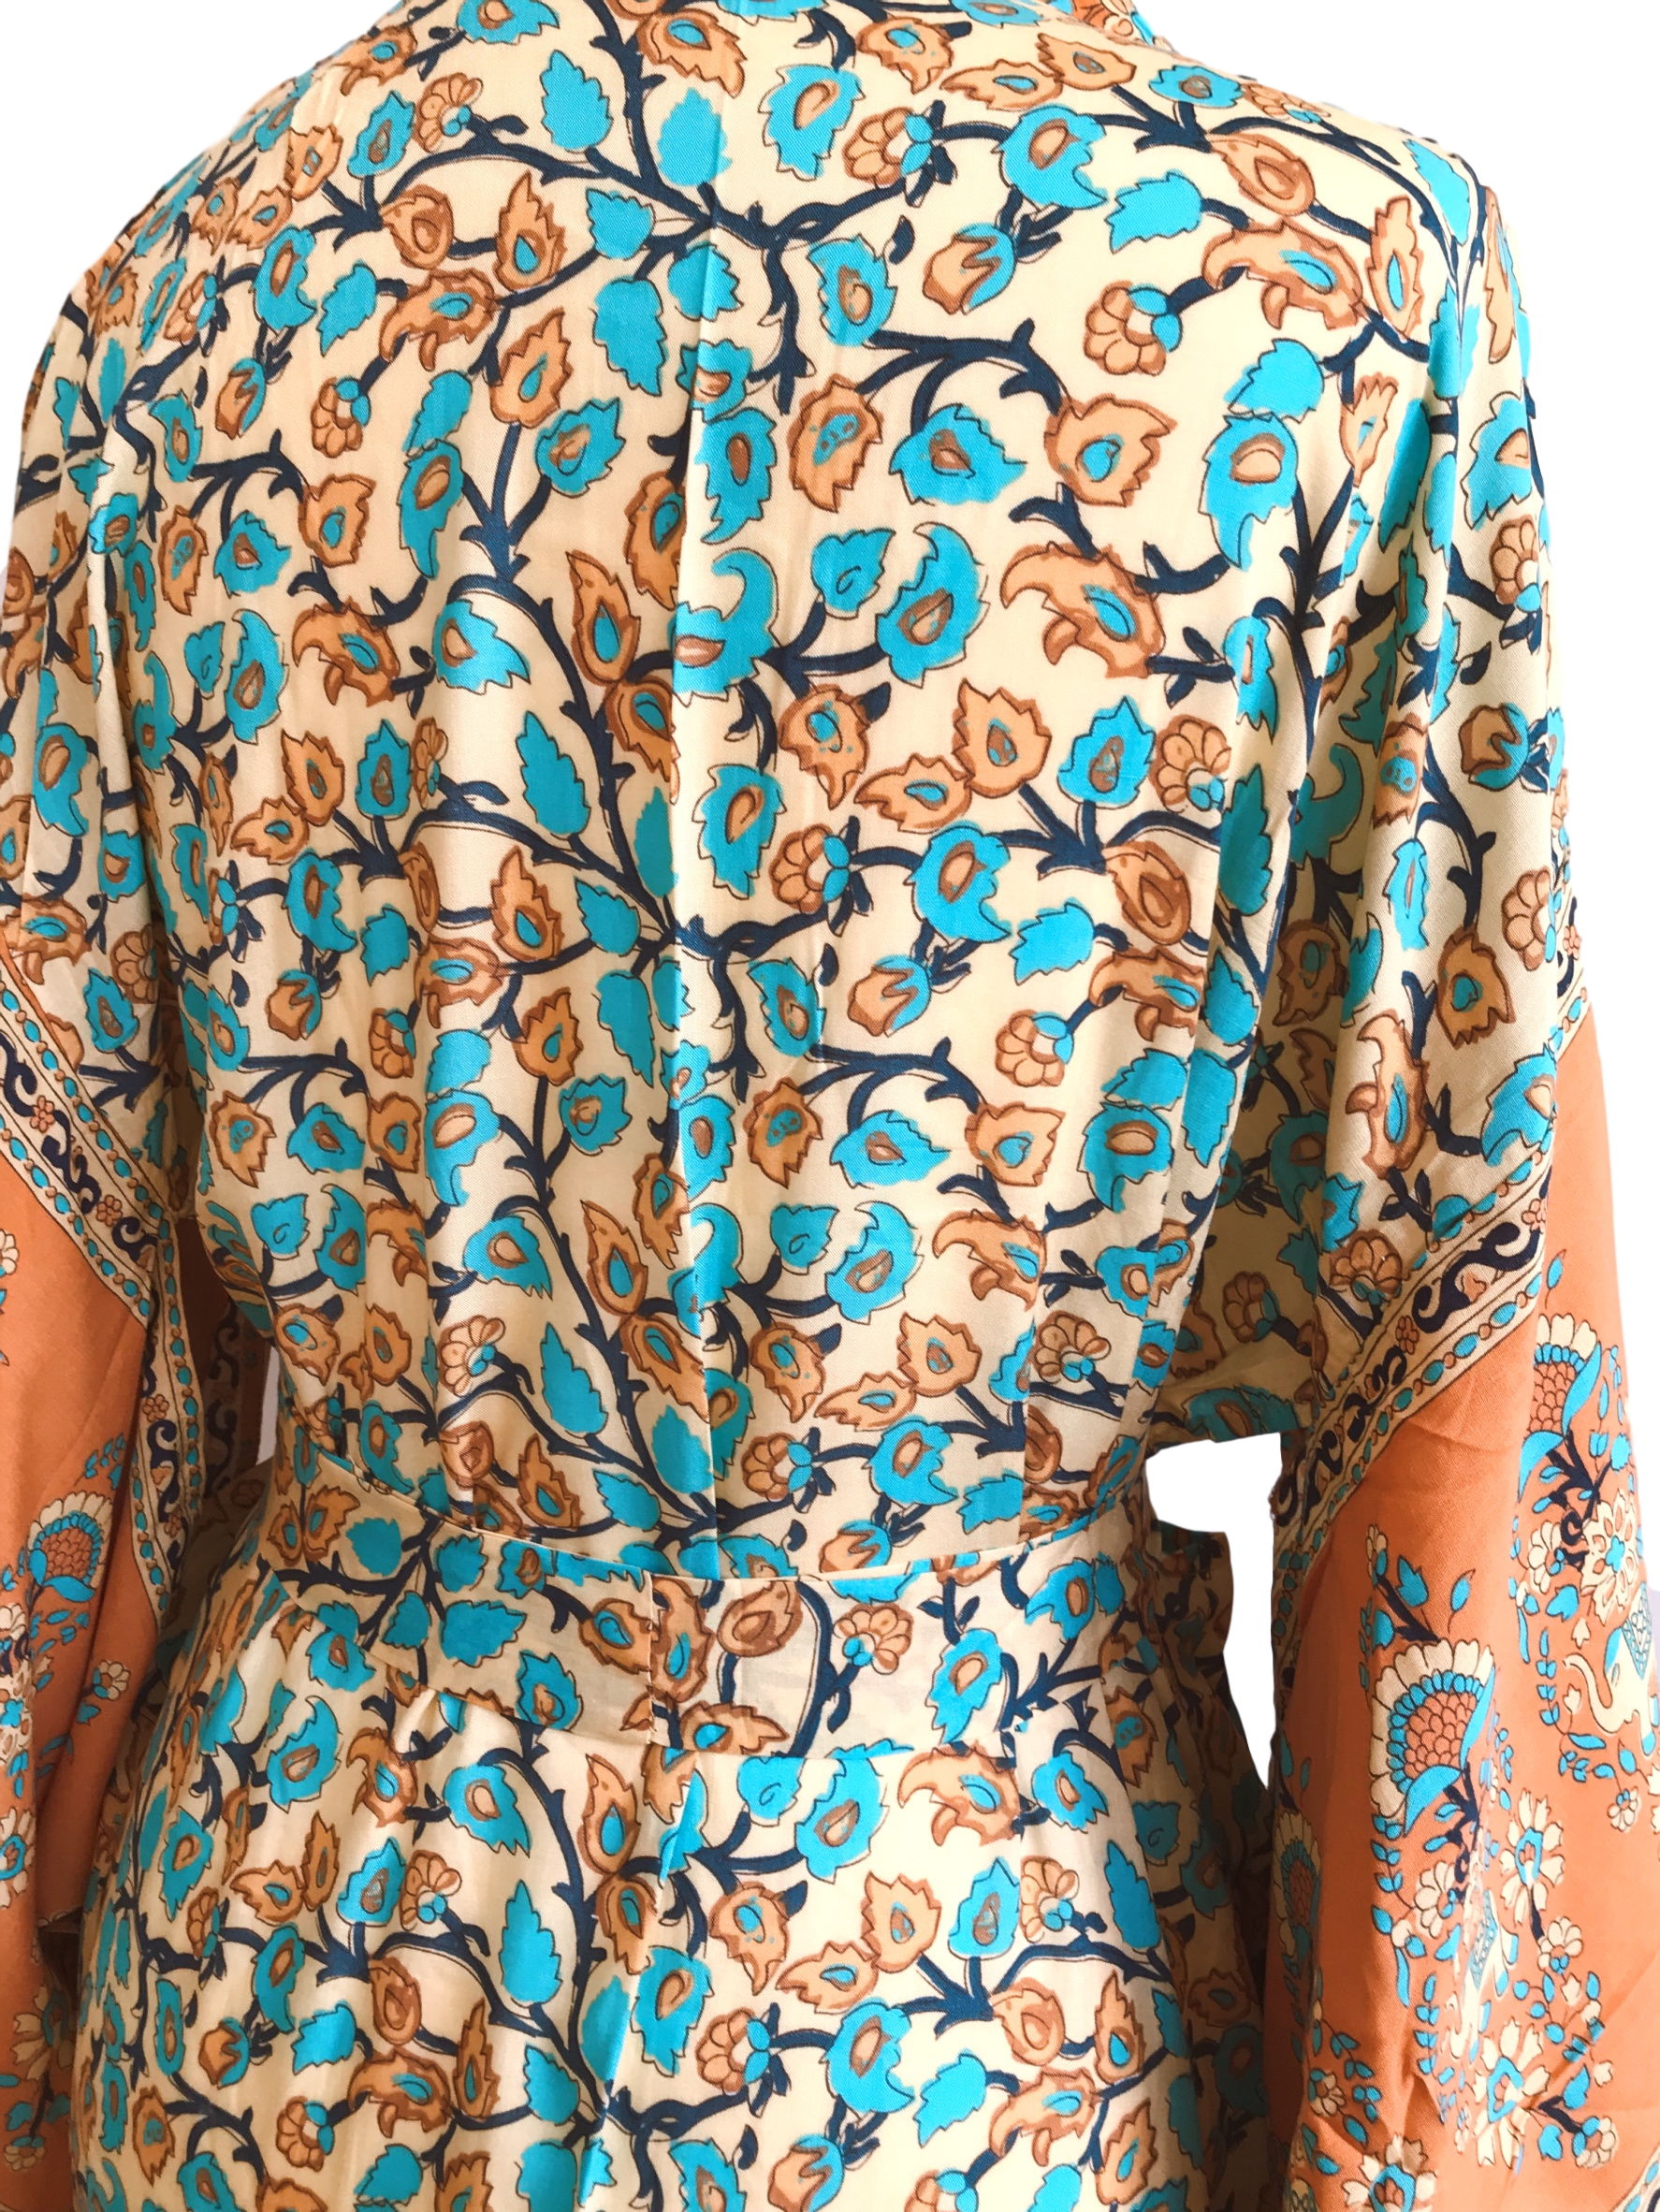 Ren floral-print bohemian kimono//cover-up//wrap dressKIMONO